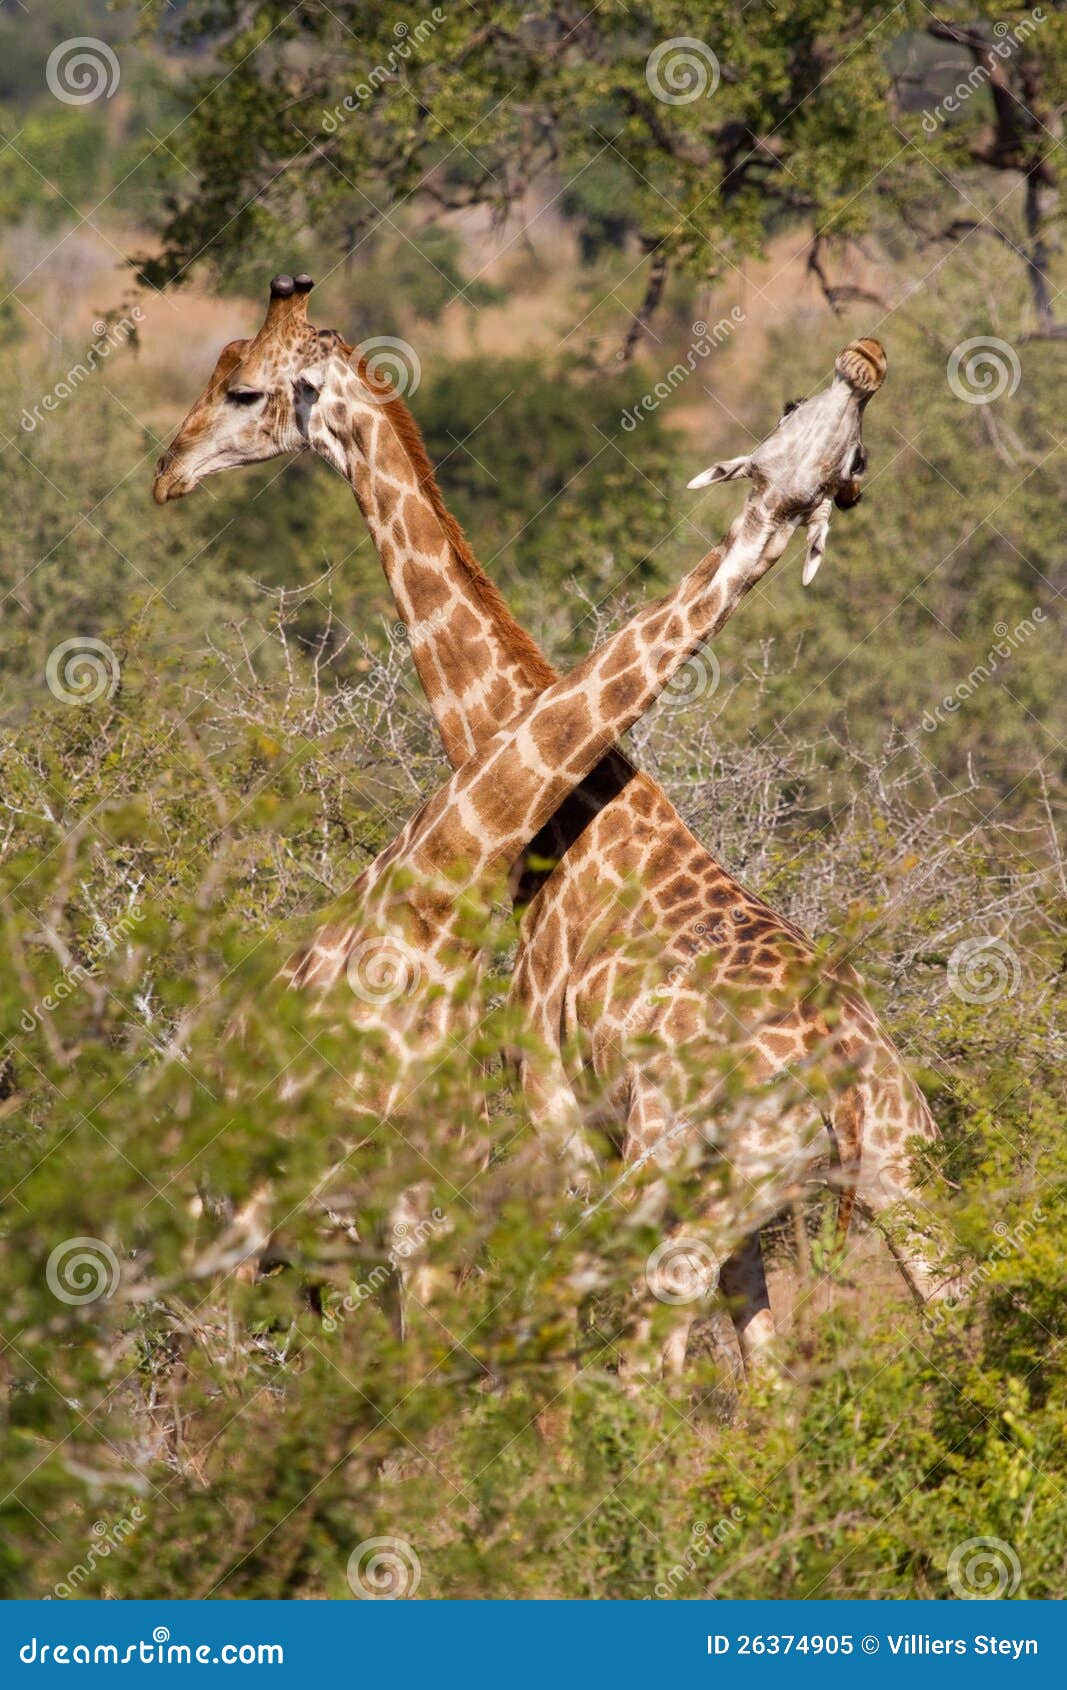 necking giraffes